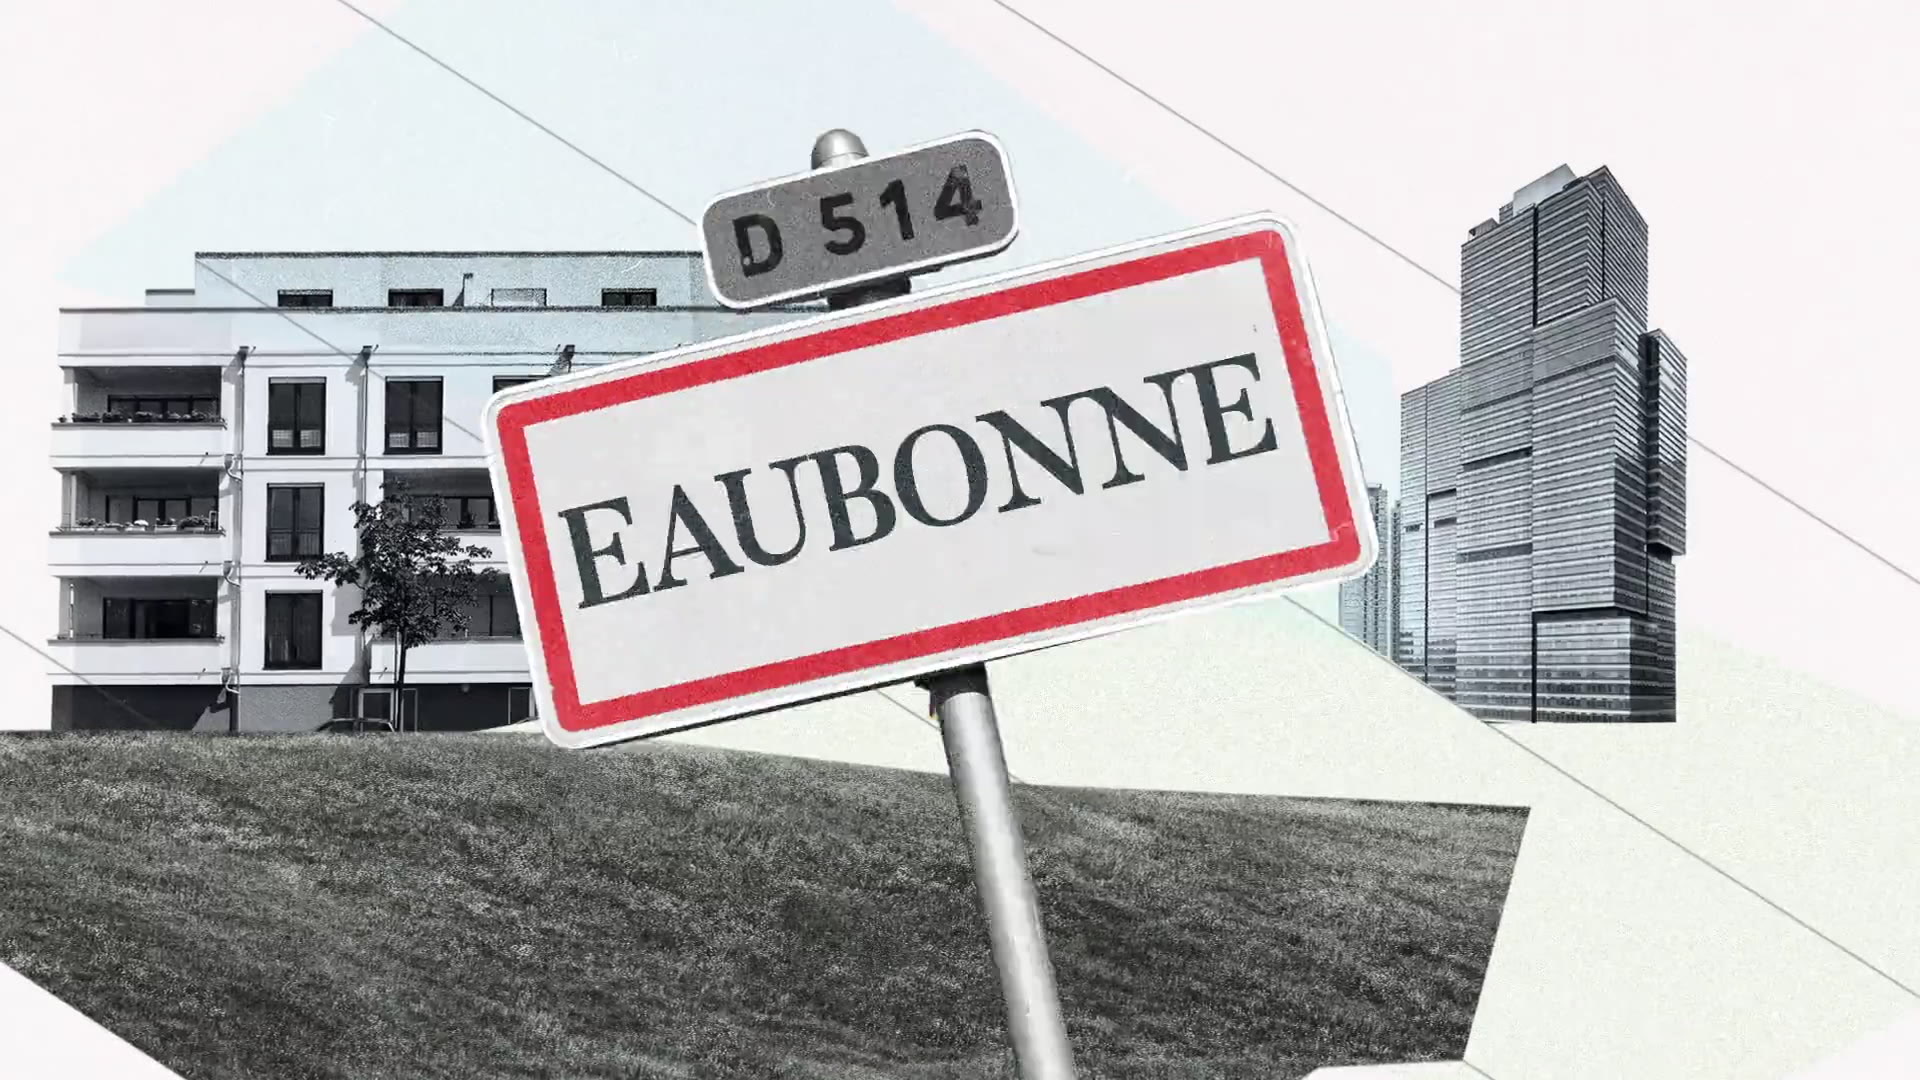  City of Eaubonne - France